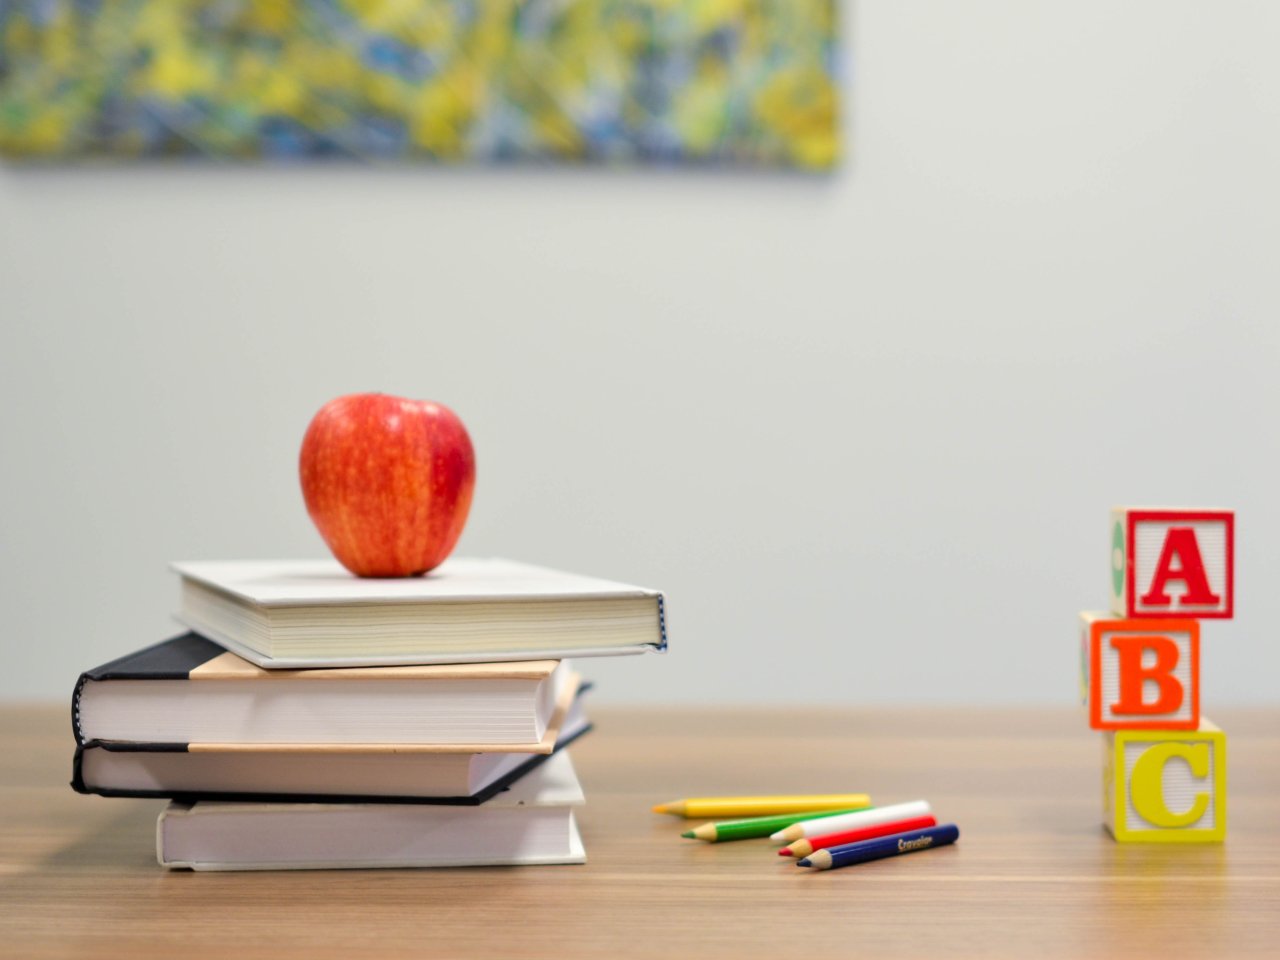 Apfel, Bücher, Farbstifte und ABC-Klötze auf einem Tisch